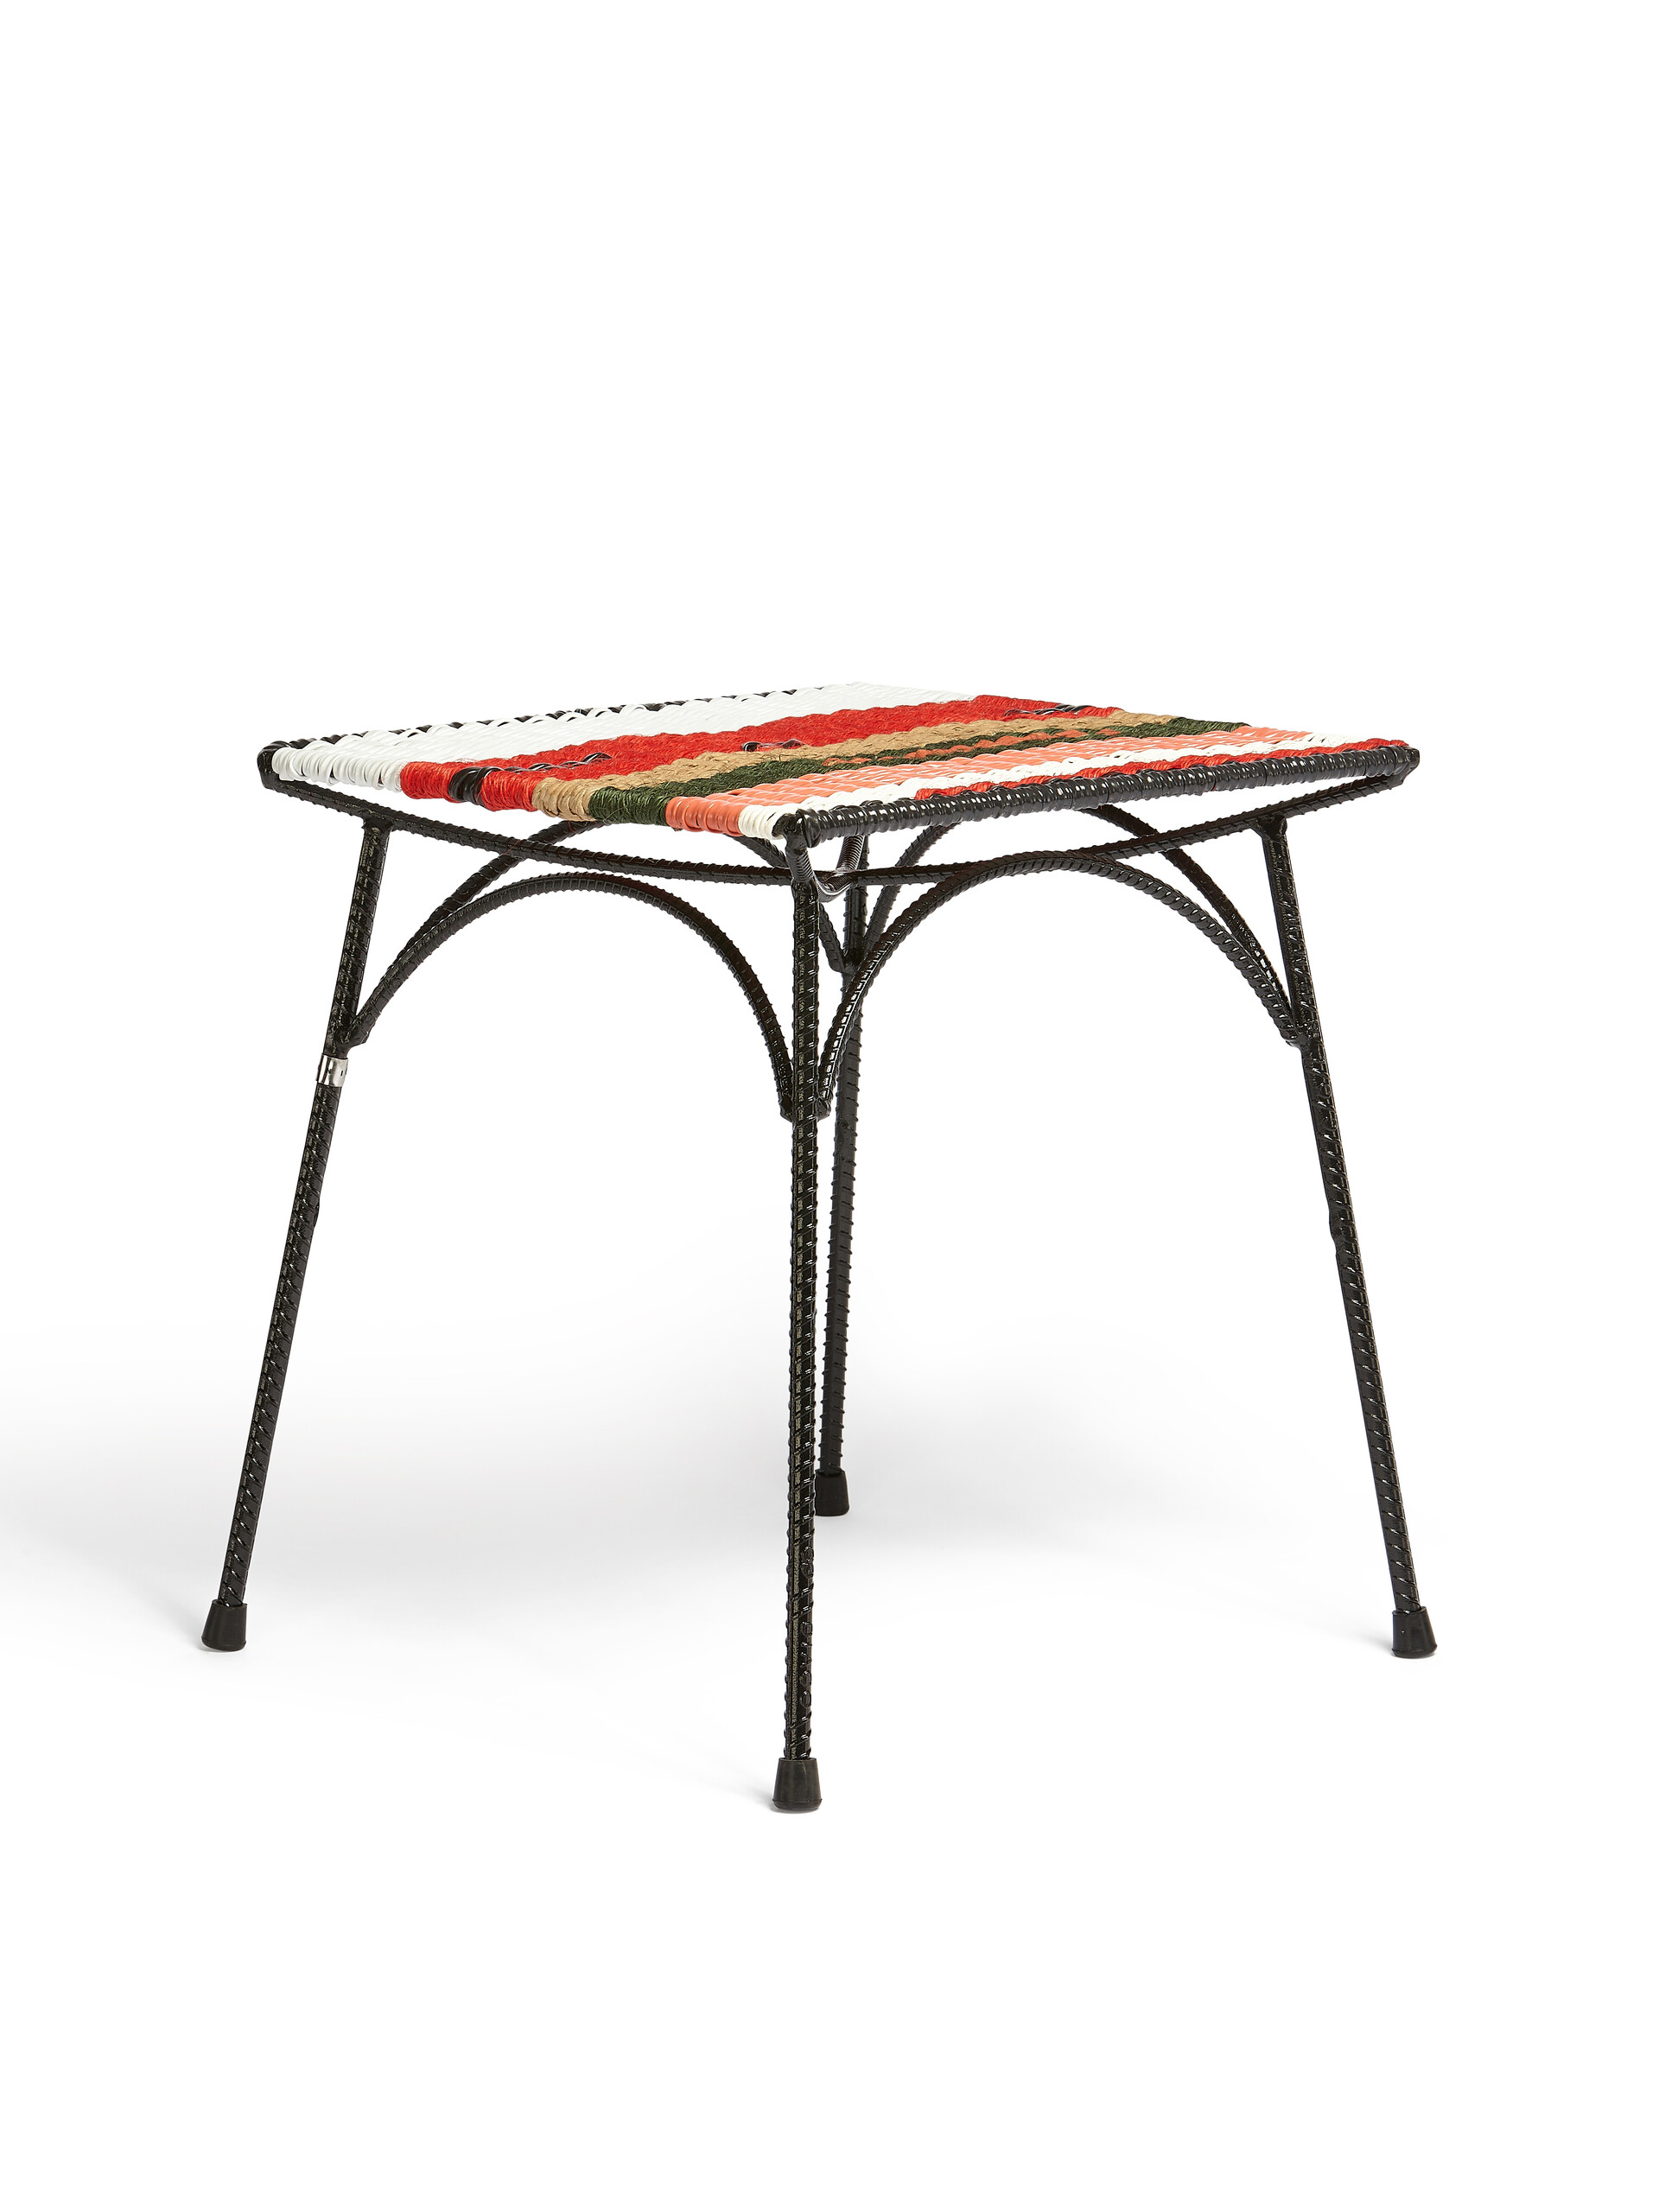 Sgabello-tavolo MARNI MARKET in ferro PVC multicolor rosso - Arredamento - Image 2